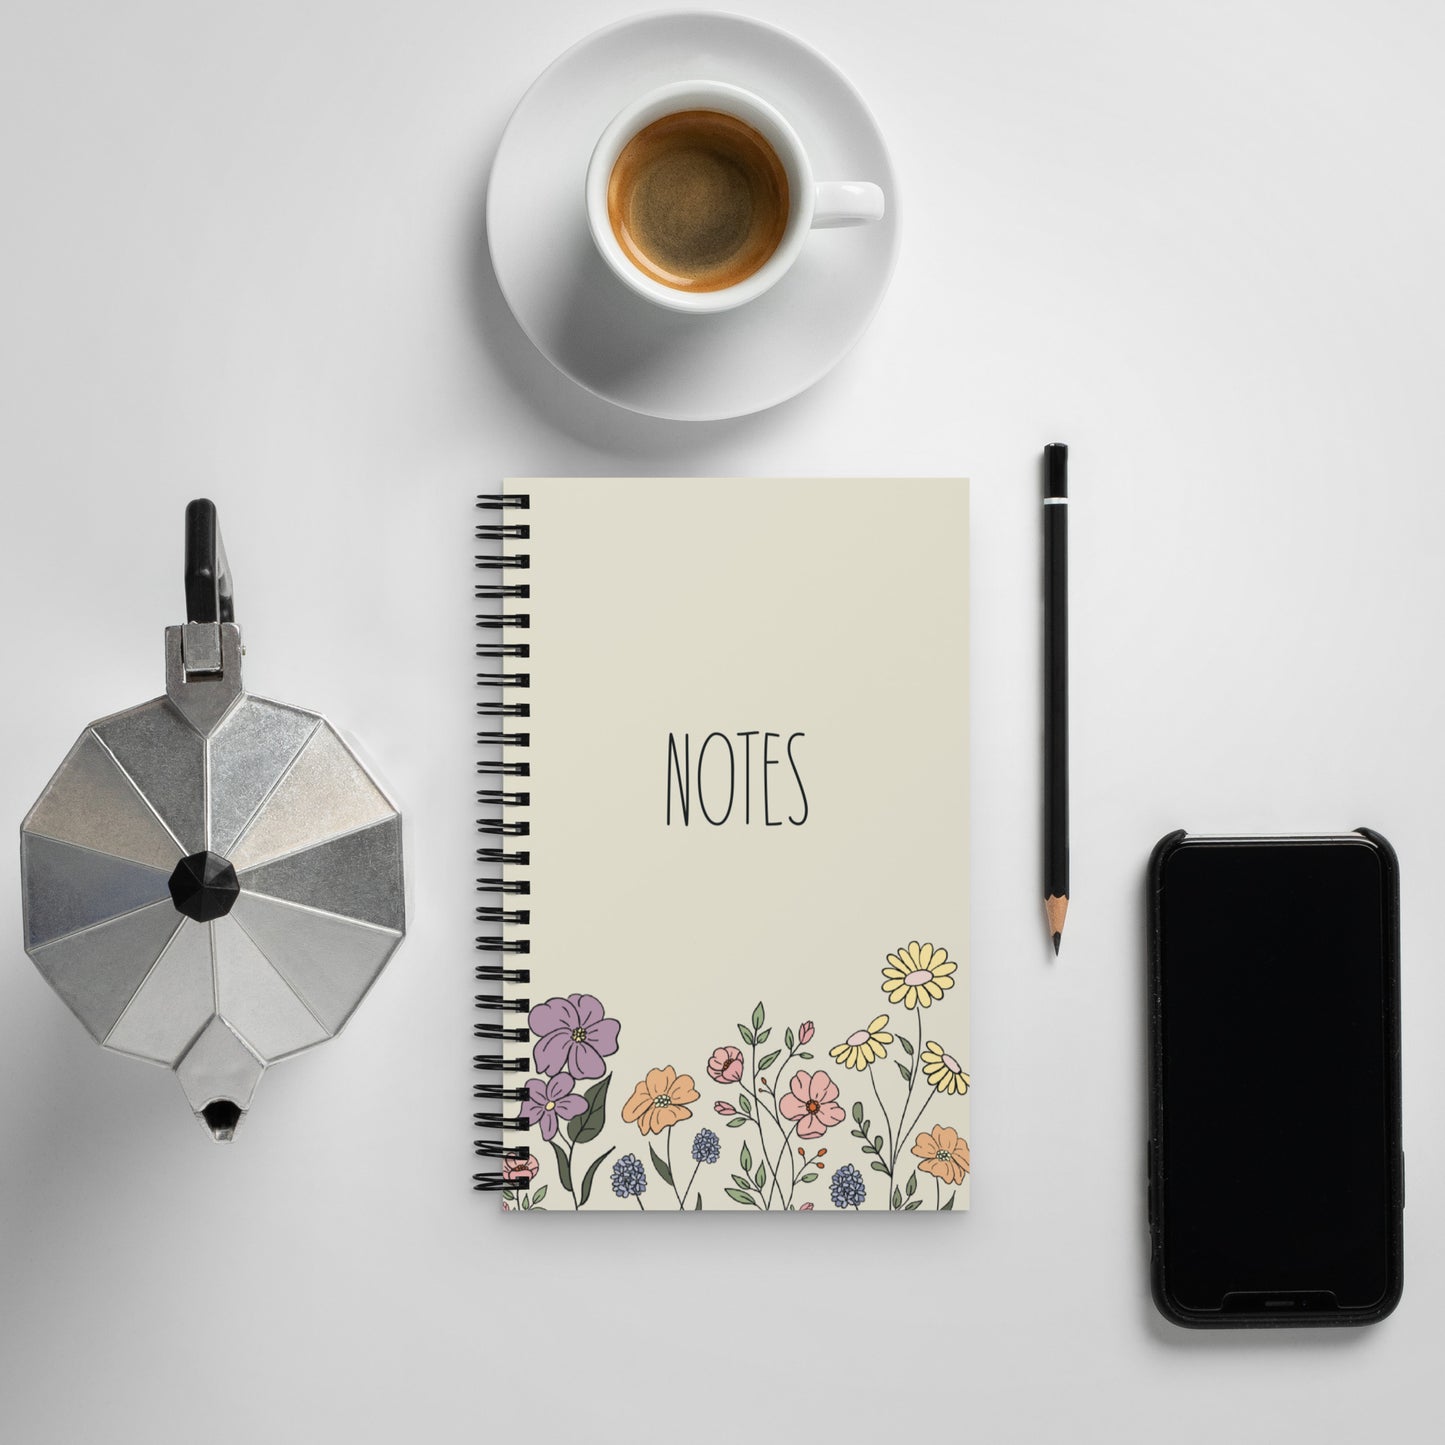 In Bloom - Spiral Notebook